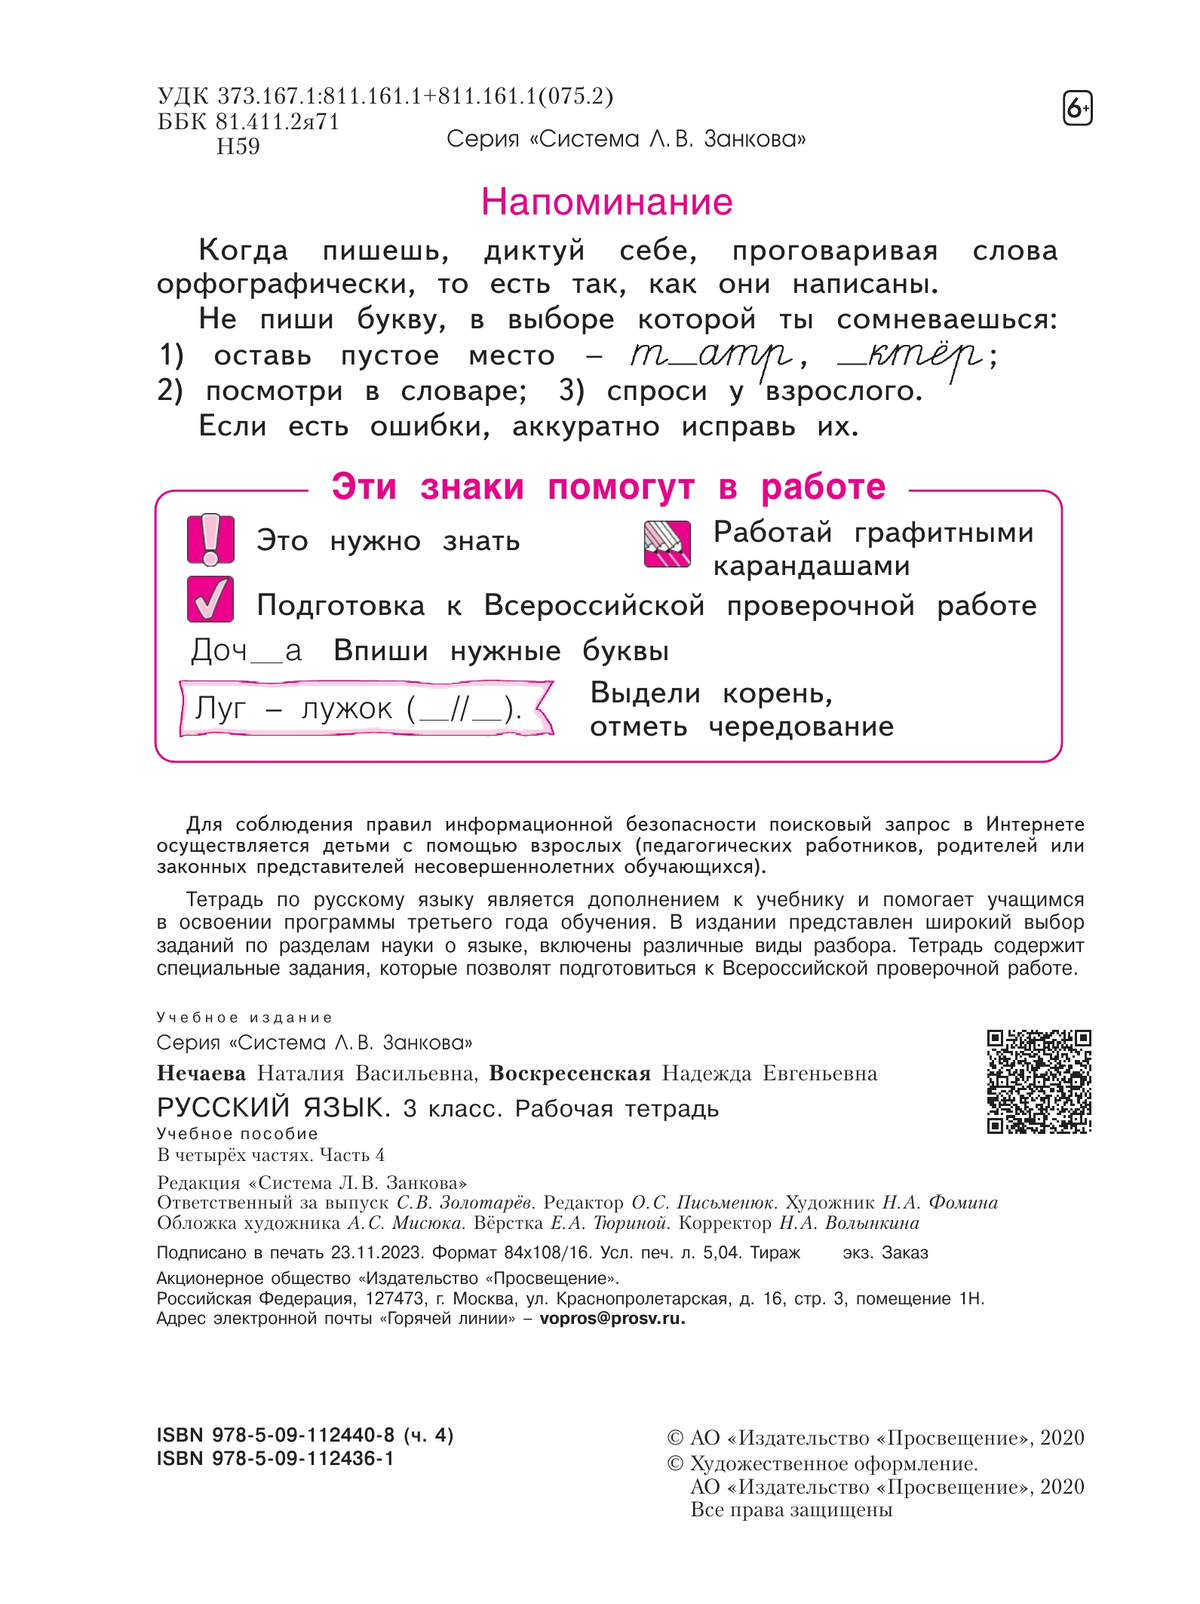 Русский язык. Рабочая тетрадь. 3 класс. В 4-х частях. Часть 4 3